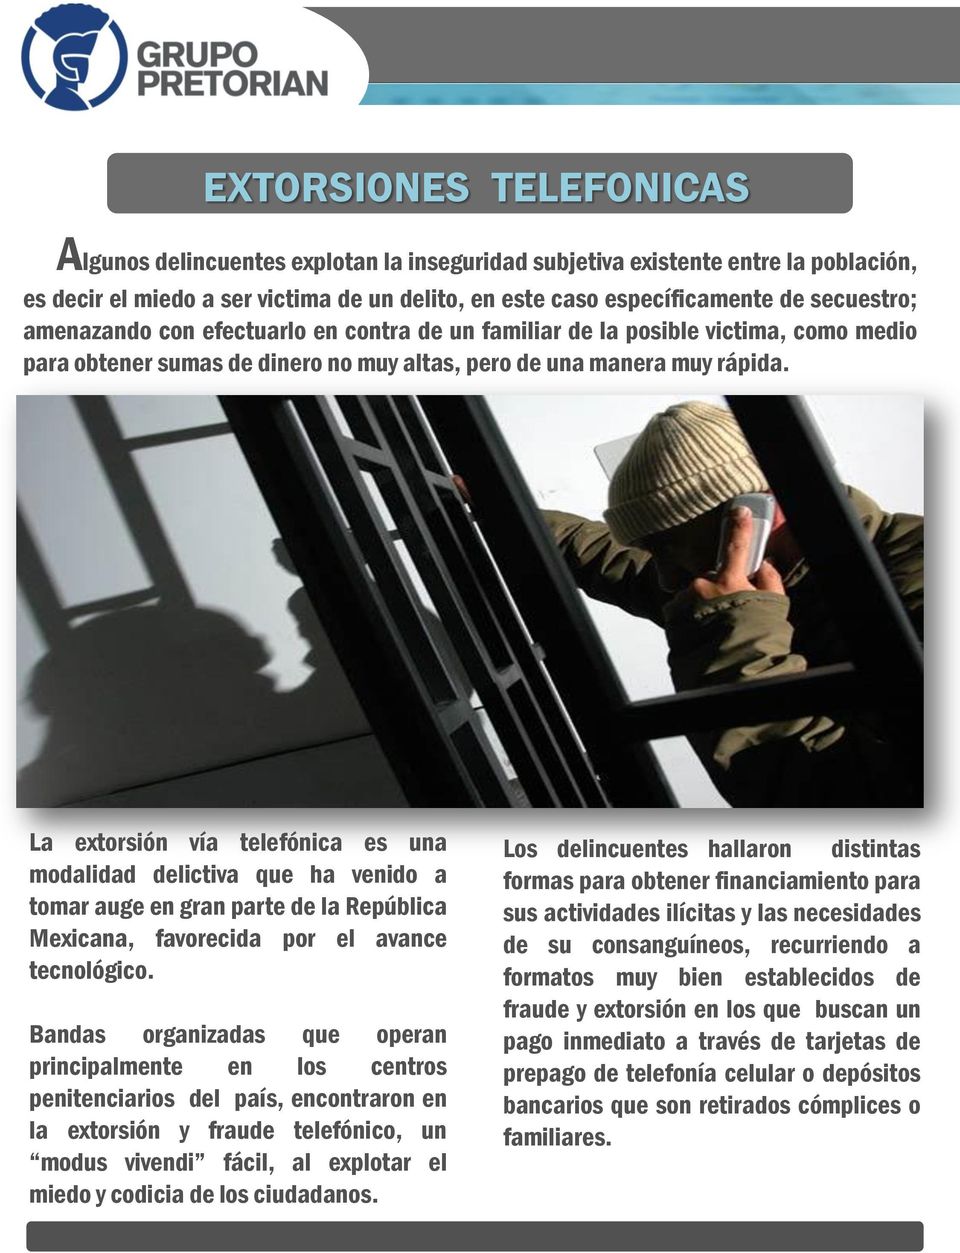 La extorsión vía telefónica es una modalidad delictiva que ha venido a tomar auge en gran parte de la República Mexicana, favorecida por el avance tecnológico.